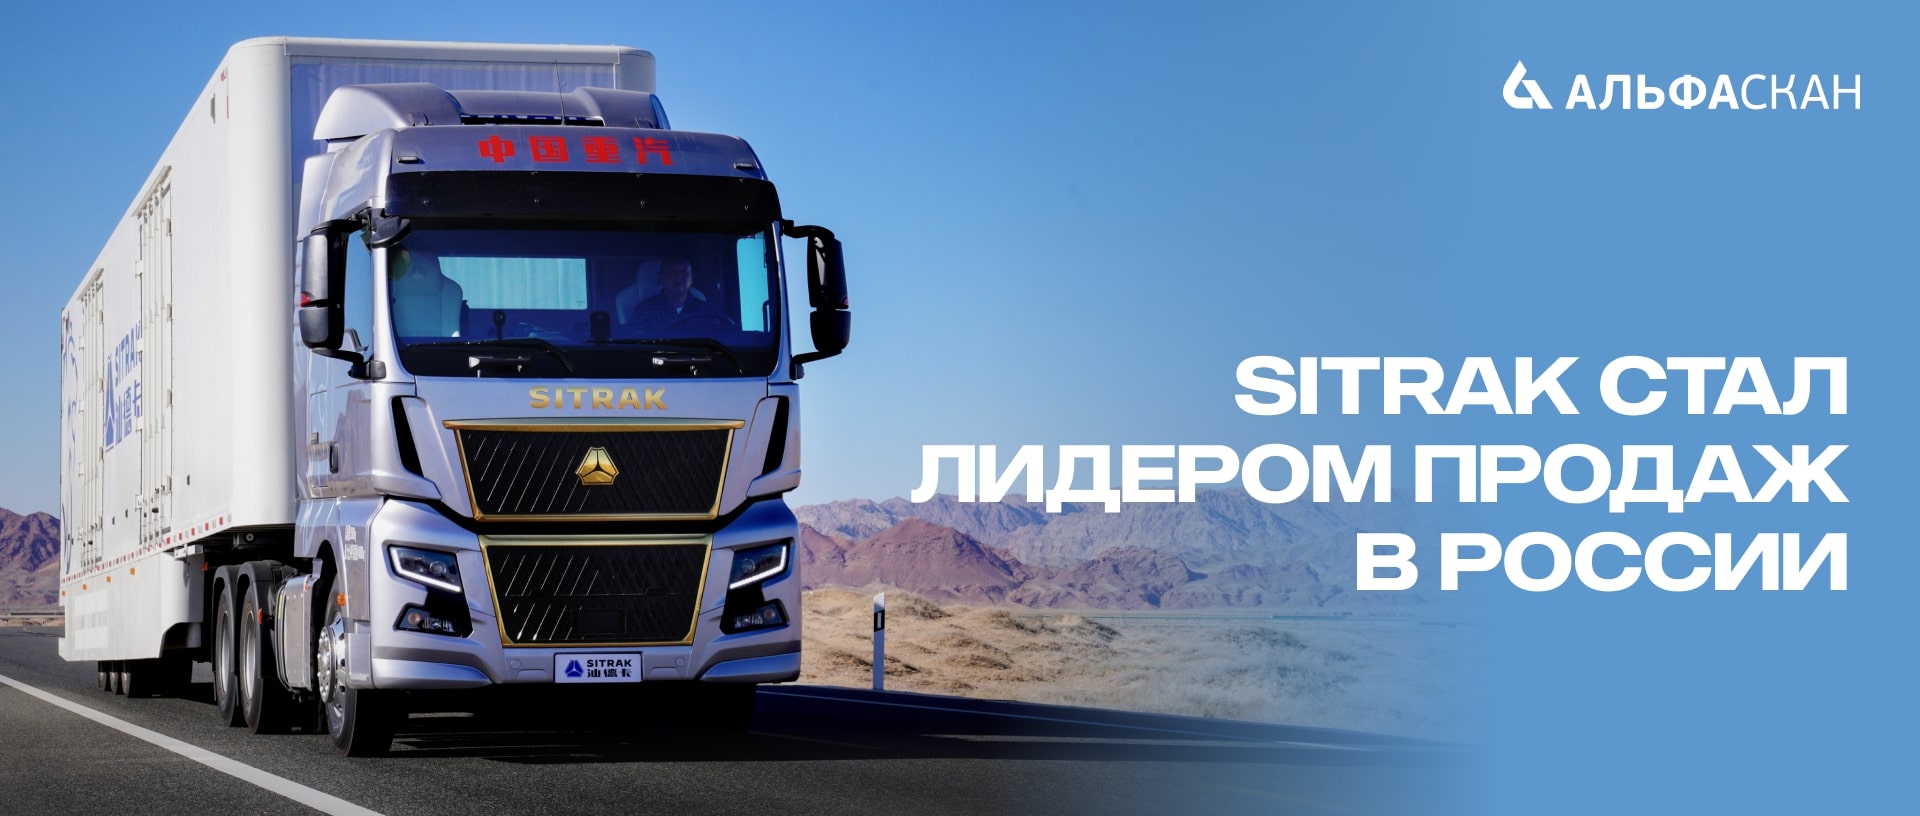 SITRAK стал самым продаваемым грузовиком в России